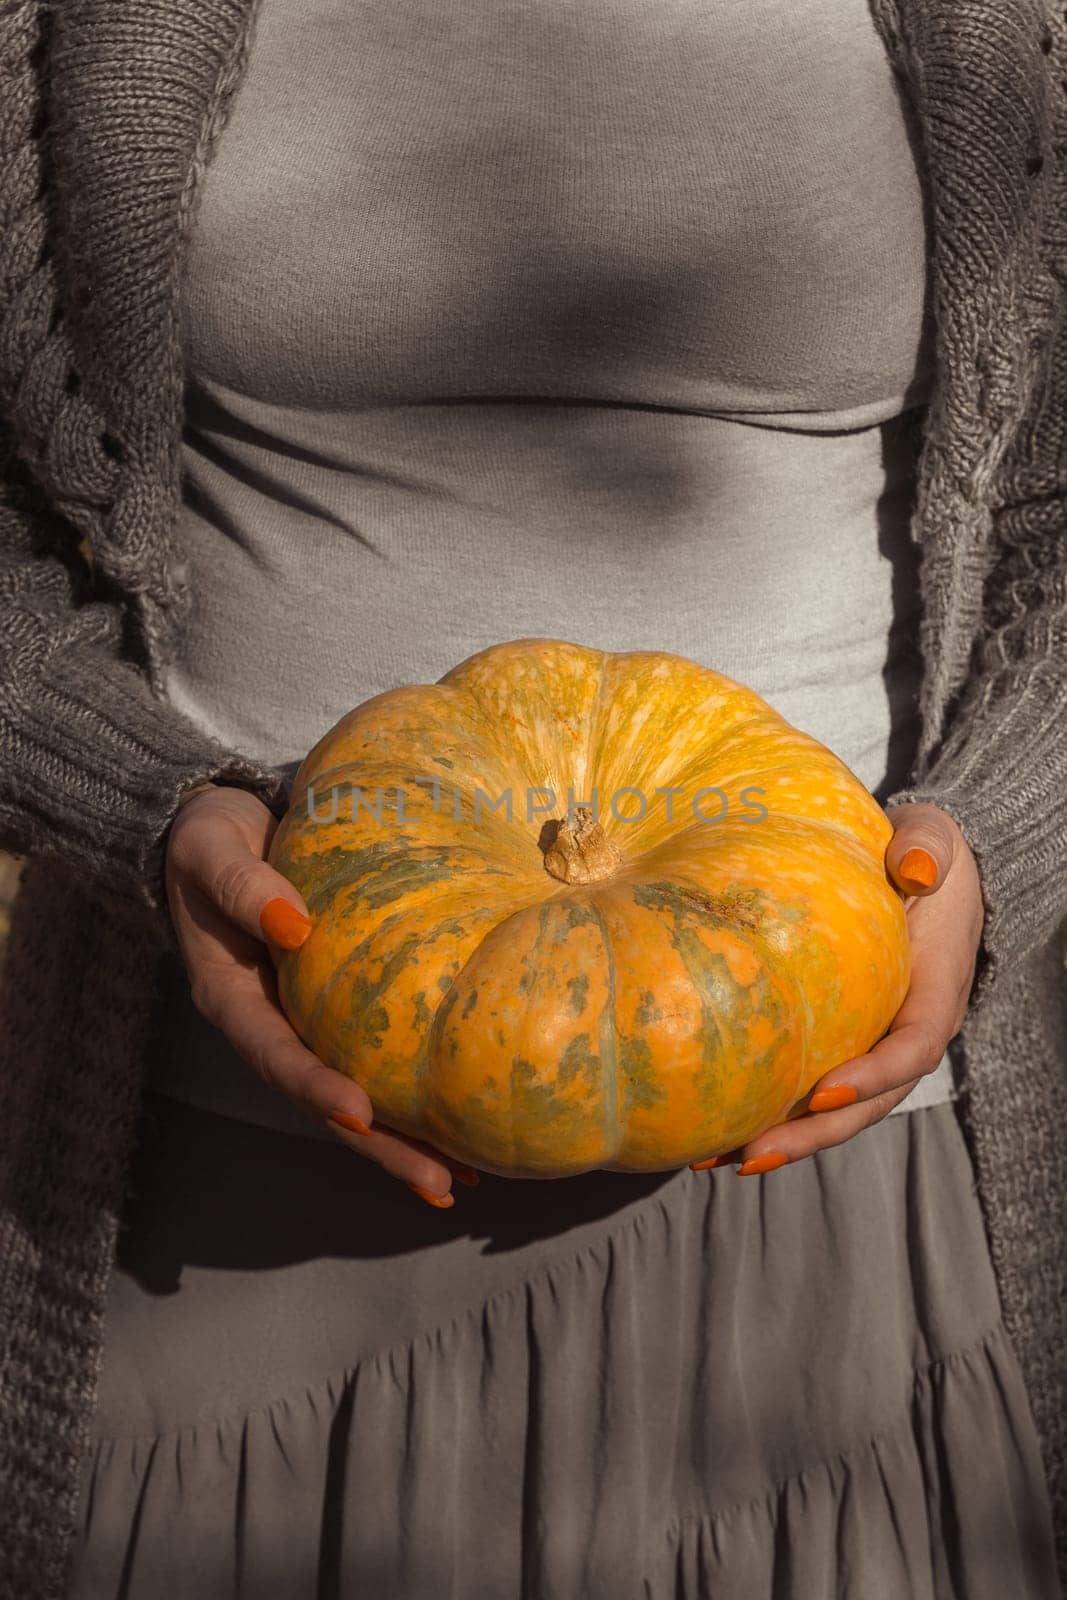 Ripe orange round pumpkin in women's hands